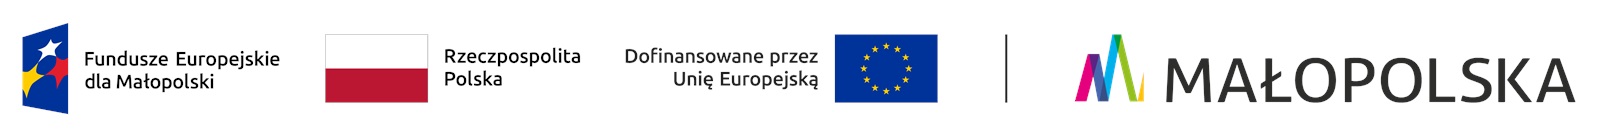 Zestawienie logotypów zawierające od lewej znak Funduszy Europejskich z podpisem Fundusze Europejskie dla Małopolski (granatowy trapez, w jego środku trzy pięcioramienne gwiazdy: biała, czerwona, żółta. Z prawej strony trapezu napis Fundusze Europejskie dla Małopolski), następnie flaga Rzeczypospolitej Polskiej (biało czerwony prostokąt, obok napis Rzeczypospolita Polska), następnie znak Unii Europejskiej złożony z napisu Dofinansowane przez Unię Europejską i flagi Unii Europejskiej (granatowy prostokąt, pośrodku okrąg złożony z 12 złotych gwiazd). Po pionowej linii rozdzielającej, oficjalne logo województwa małopolskiego (wielobarwna wstęga ułożona w kształt litery M, za nią napis dużymi literami MAŁOPOLSKA) 